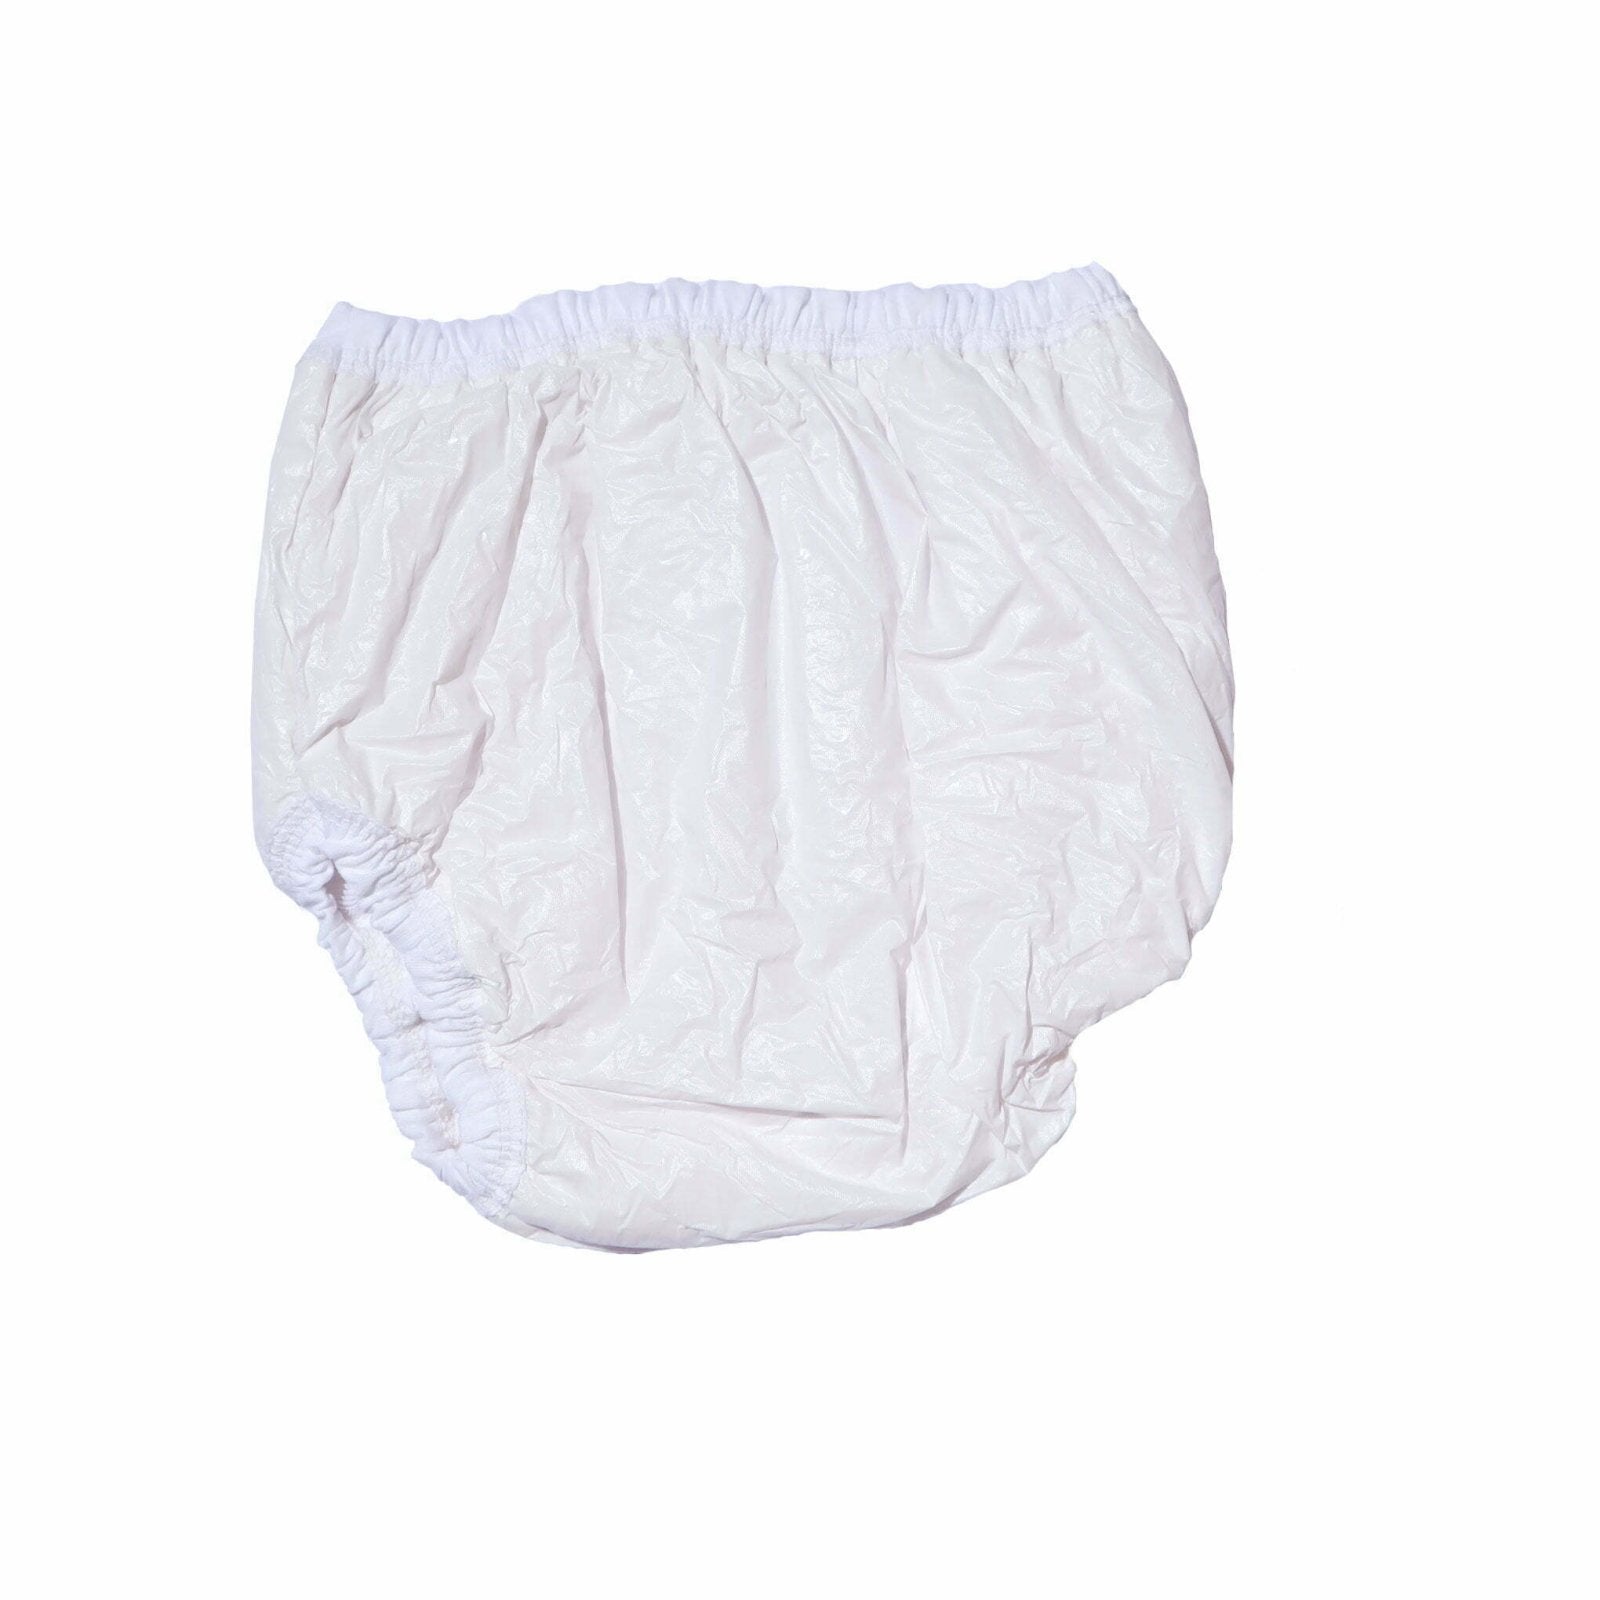 Waterproof Panties For Babies Pack Of 3 by Little Darling